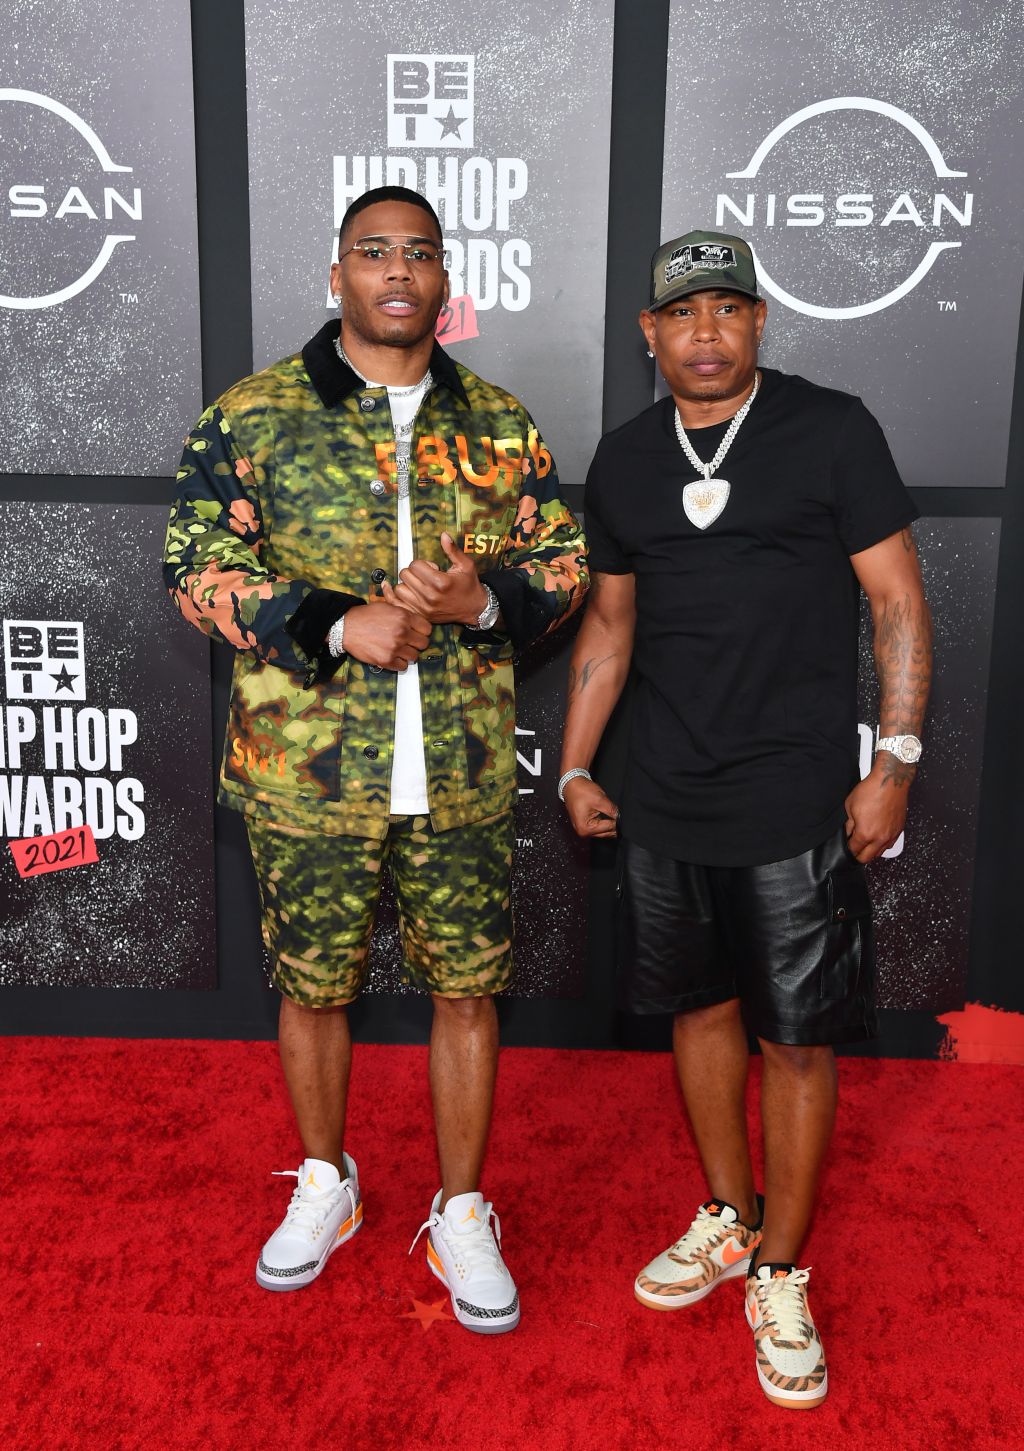 Photos: BET Hip Hop Awards 2021 red carpet looks